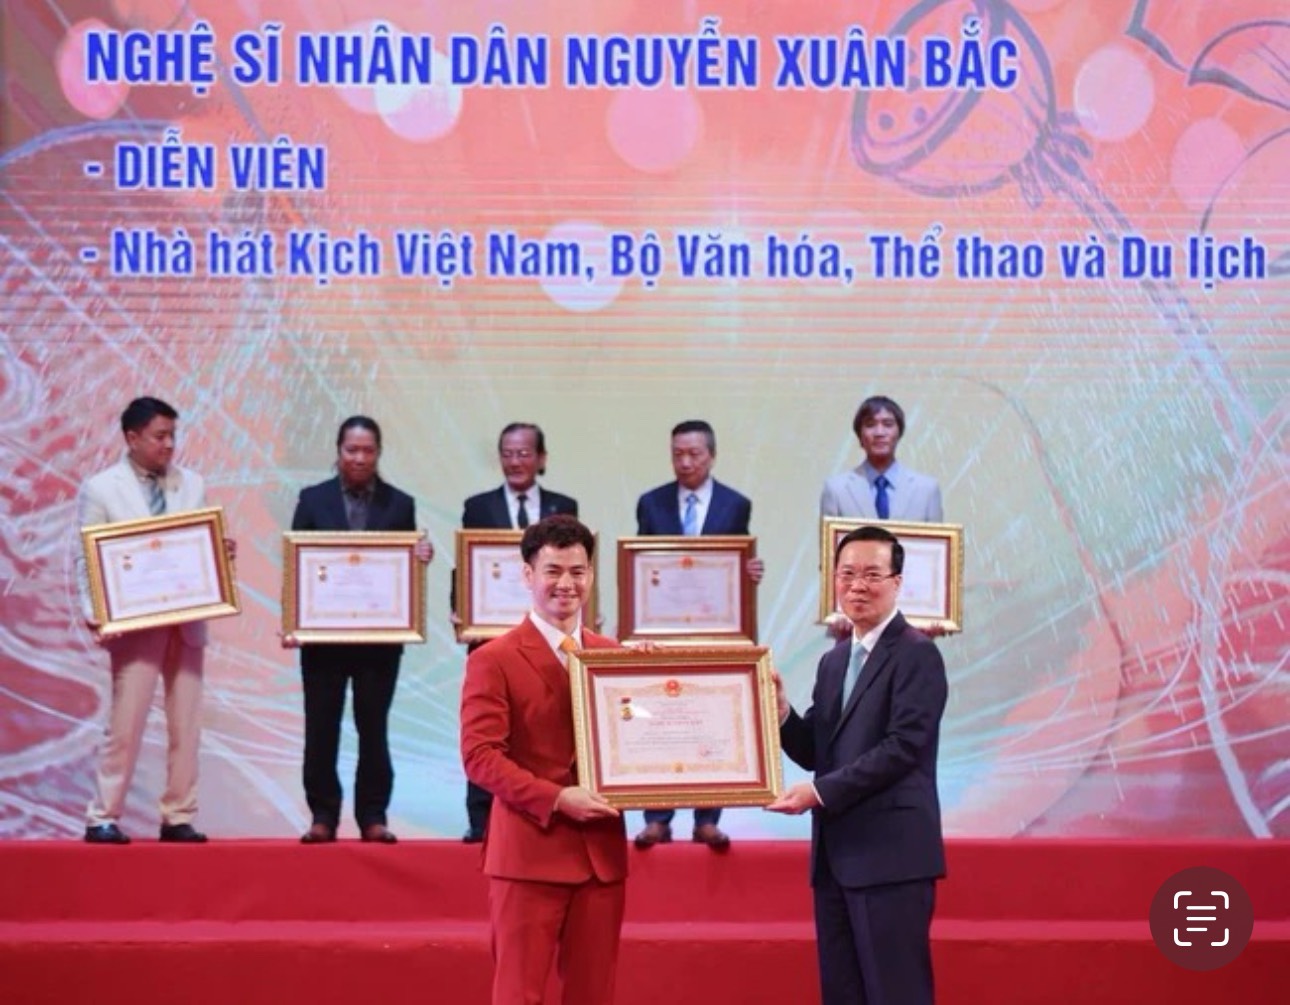 Nghệ sĩ Xuân Bắc, Thanh Lam, Tấn Minh - Thu Huyền... vui mừng nhận danh hiệu Nghệ sĩ nhân dân